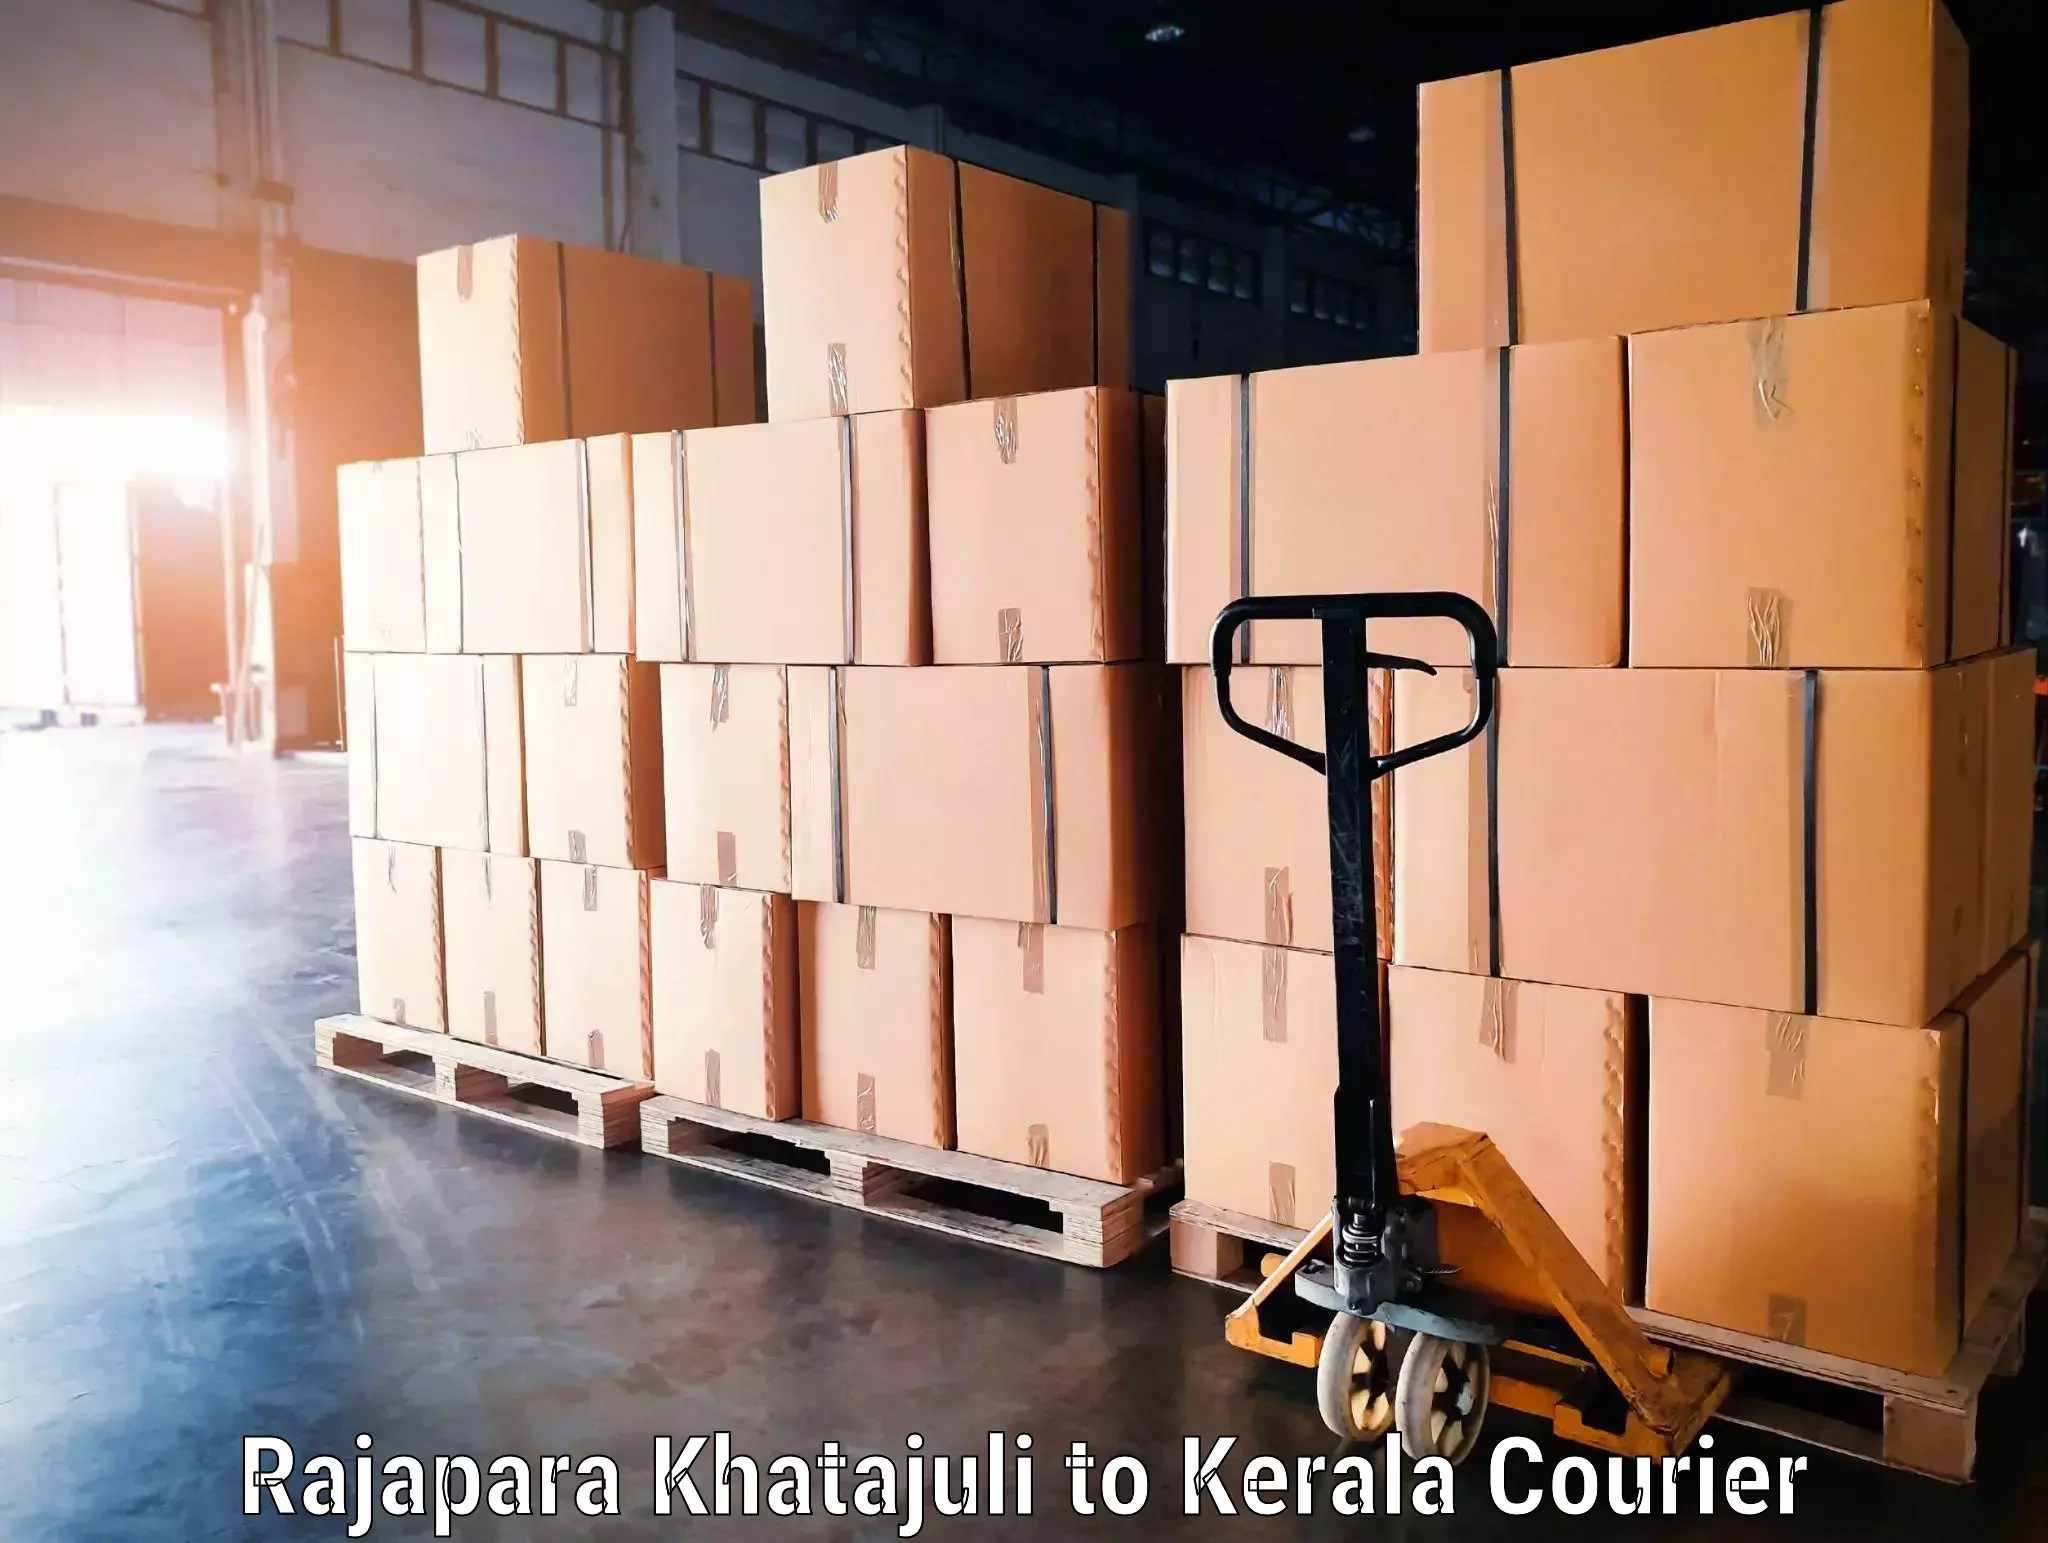 Automated luggage transport in Rajapara Khatajuli to Kothanalloor